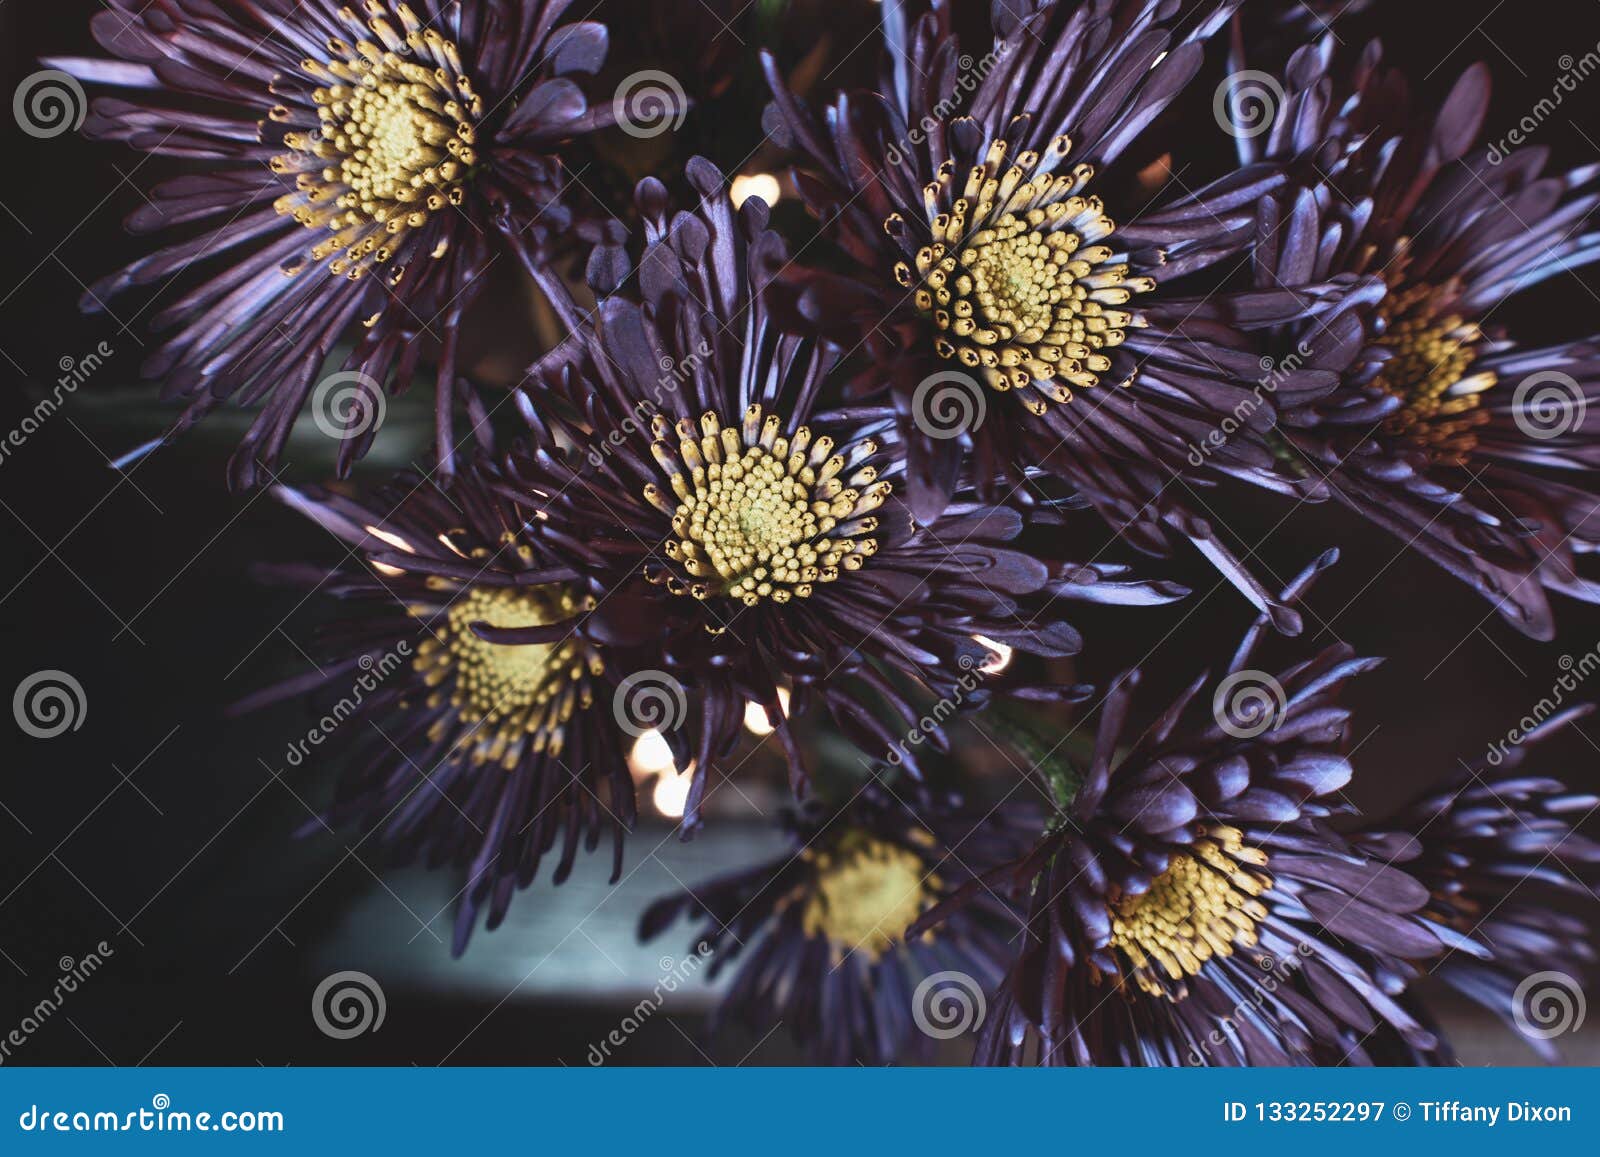 Details 48 flores de color morado oscuro